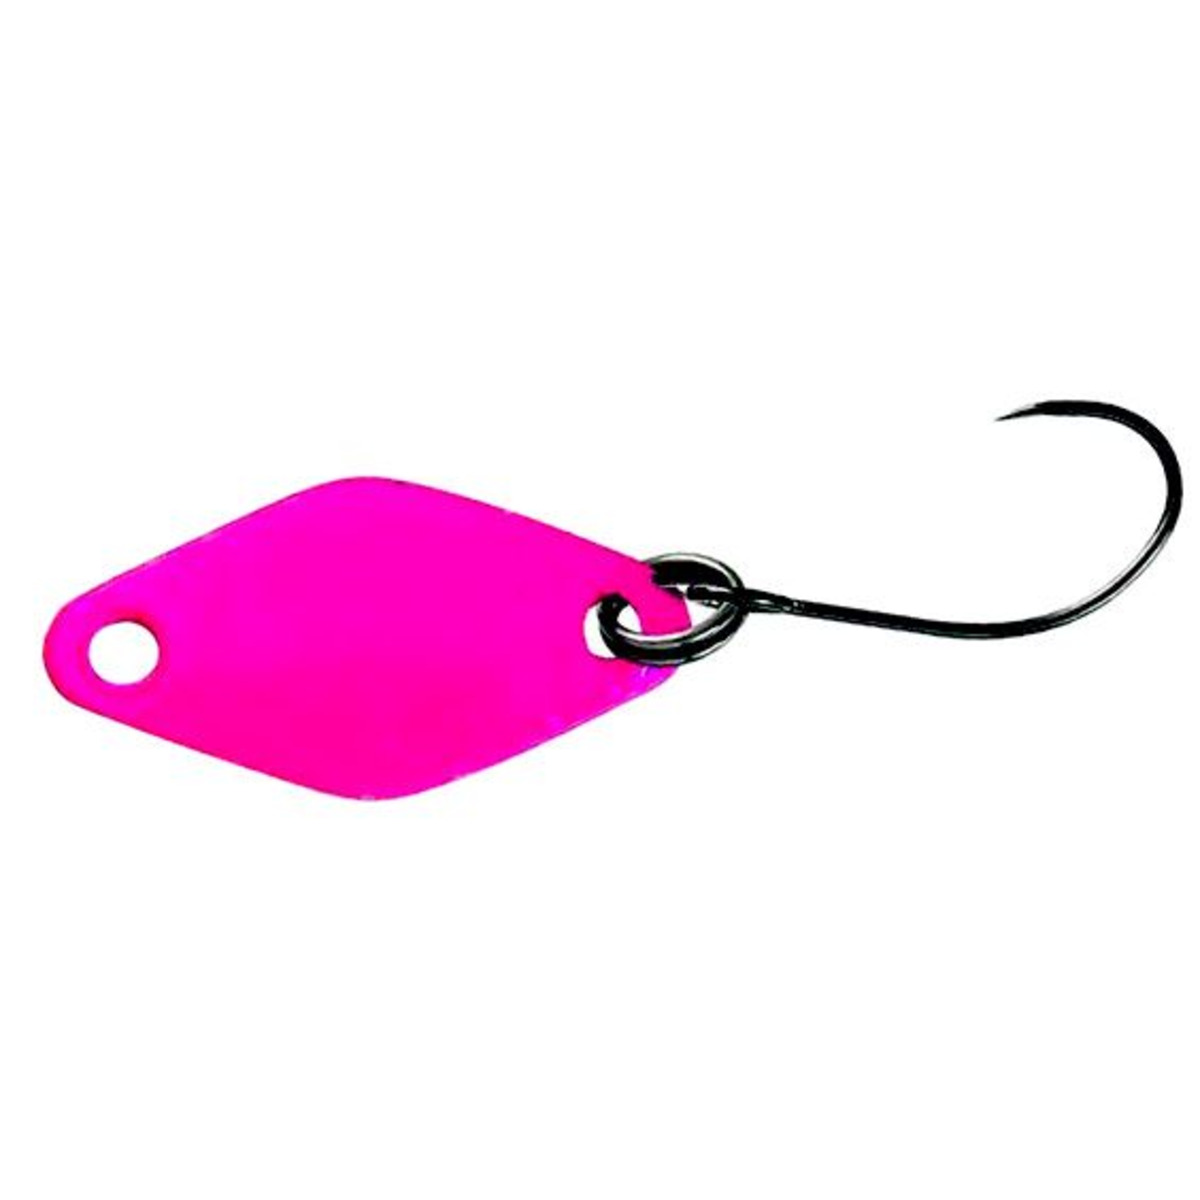 Herakles Kite Spoon - 1.2 g - Pink Pellet